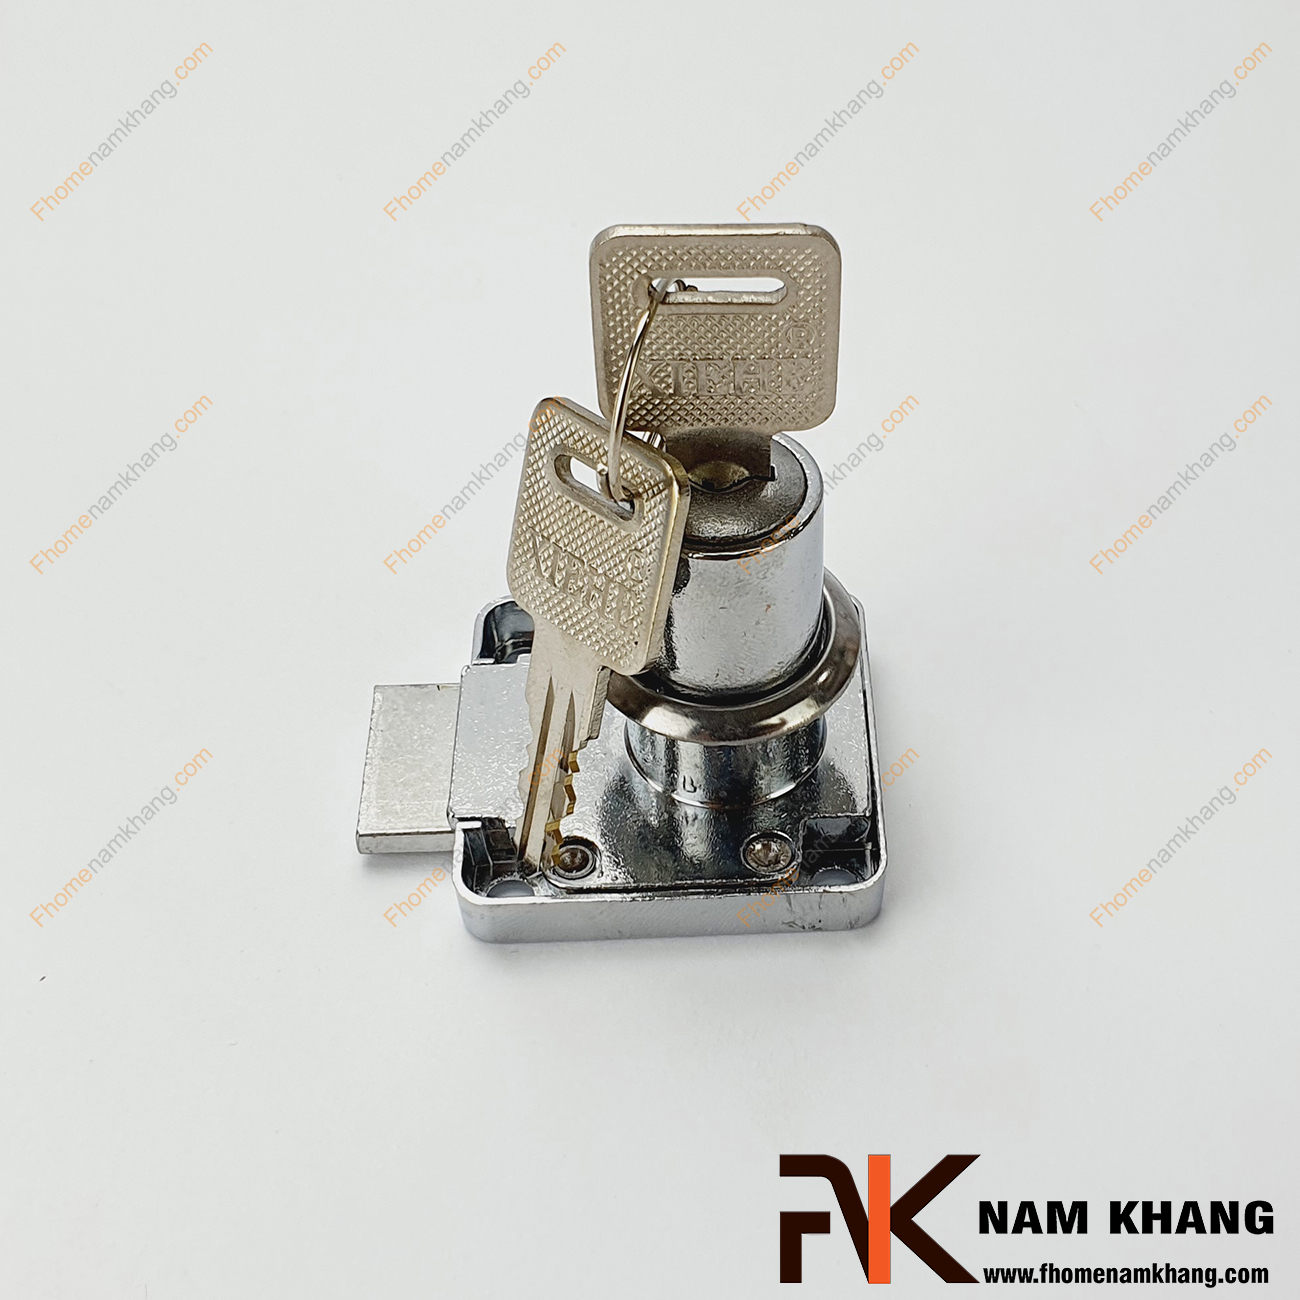 Khóa cửa tủ - Khóa cổ cao NK710-KCC dòng khóa tủ nhỏ thông dụng được sử dụng rất nhiều trên thị trường. Ở hầu hết các loại tủ kệ, tủ quần áo bằng gỗ, bằng nhôm, sắt đều có thể sử dụng được loại khóa này. 